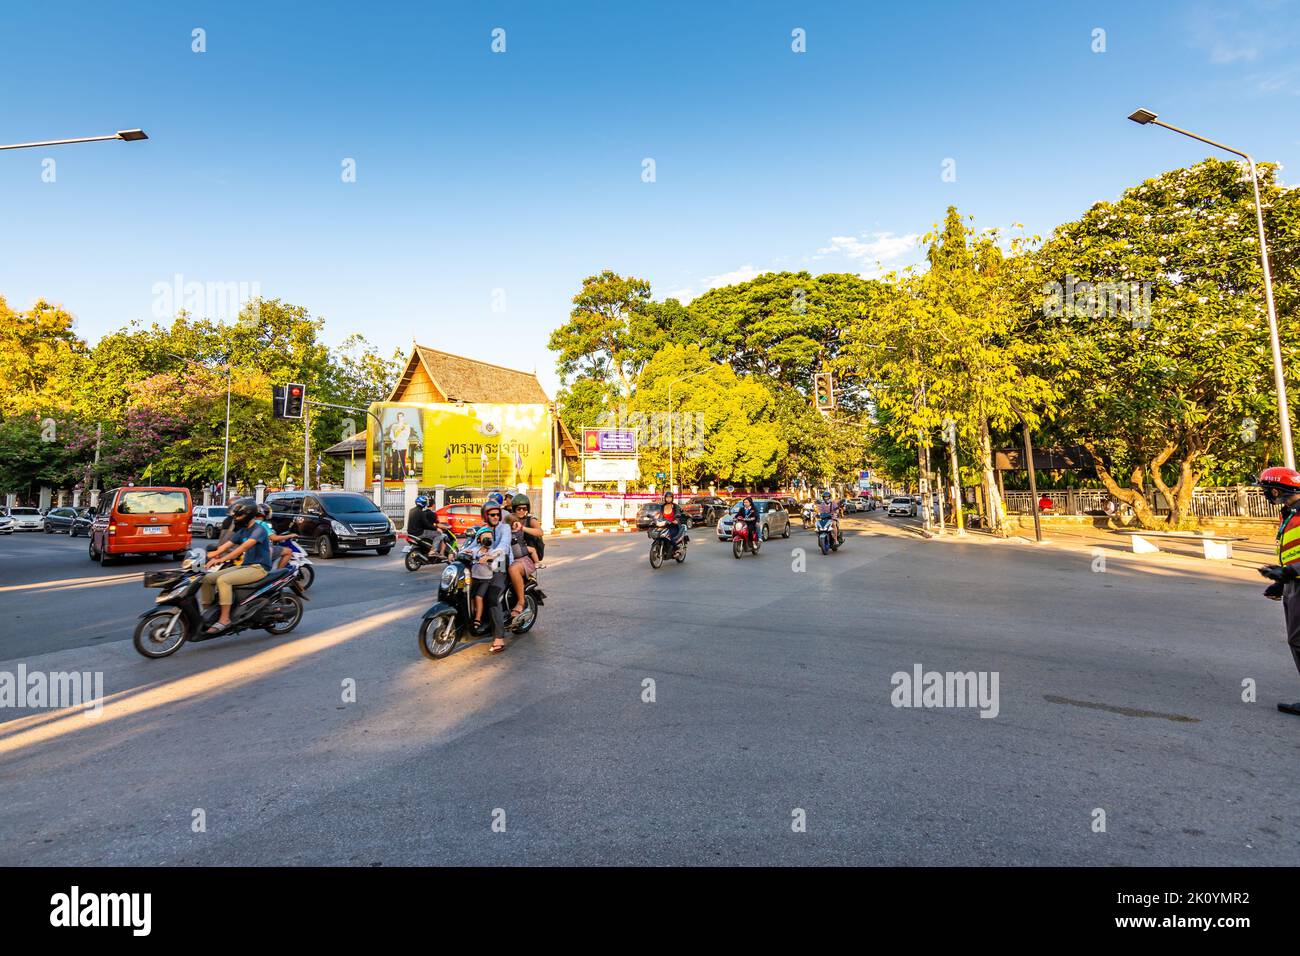 CHIANG MAI, THAILAND - 3.11.2019: Blick auf die Straße in der Stadt Chiang Mai, Thailand. Autos, Fahrräder, Tuk Tuks und mehr Fahrzeuge auf der Straße. Street Shops und s Stockfoto